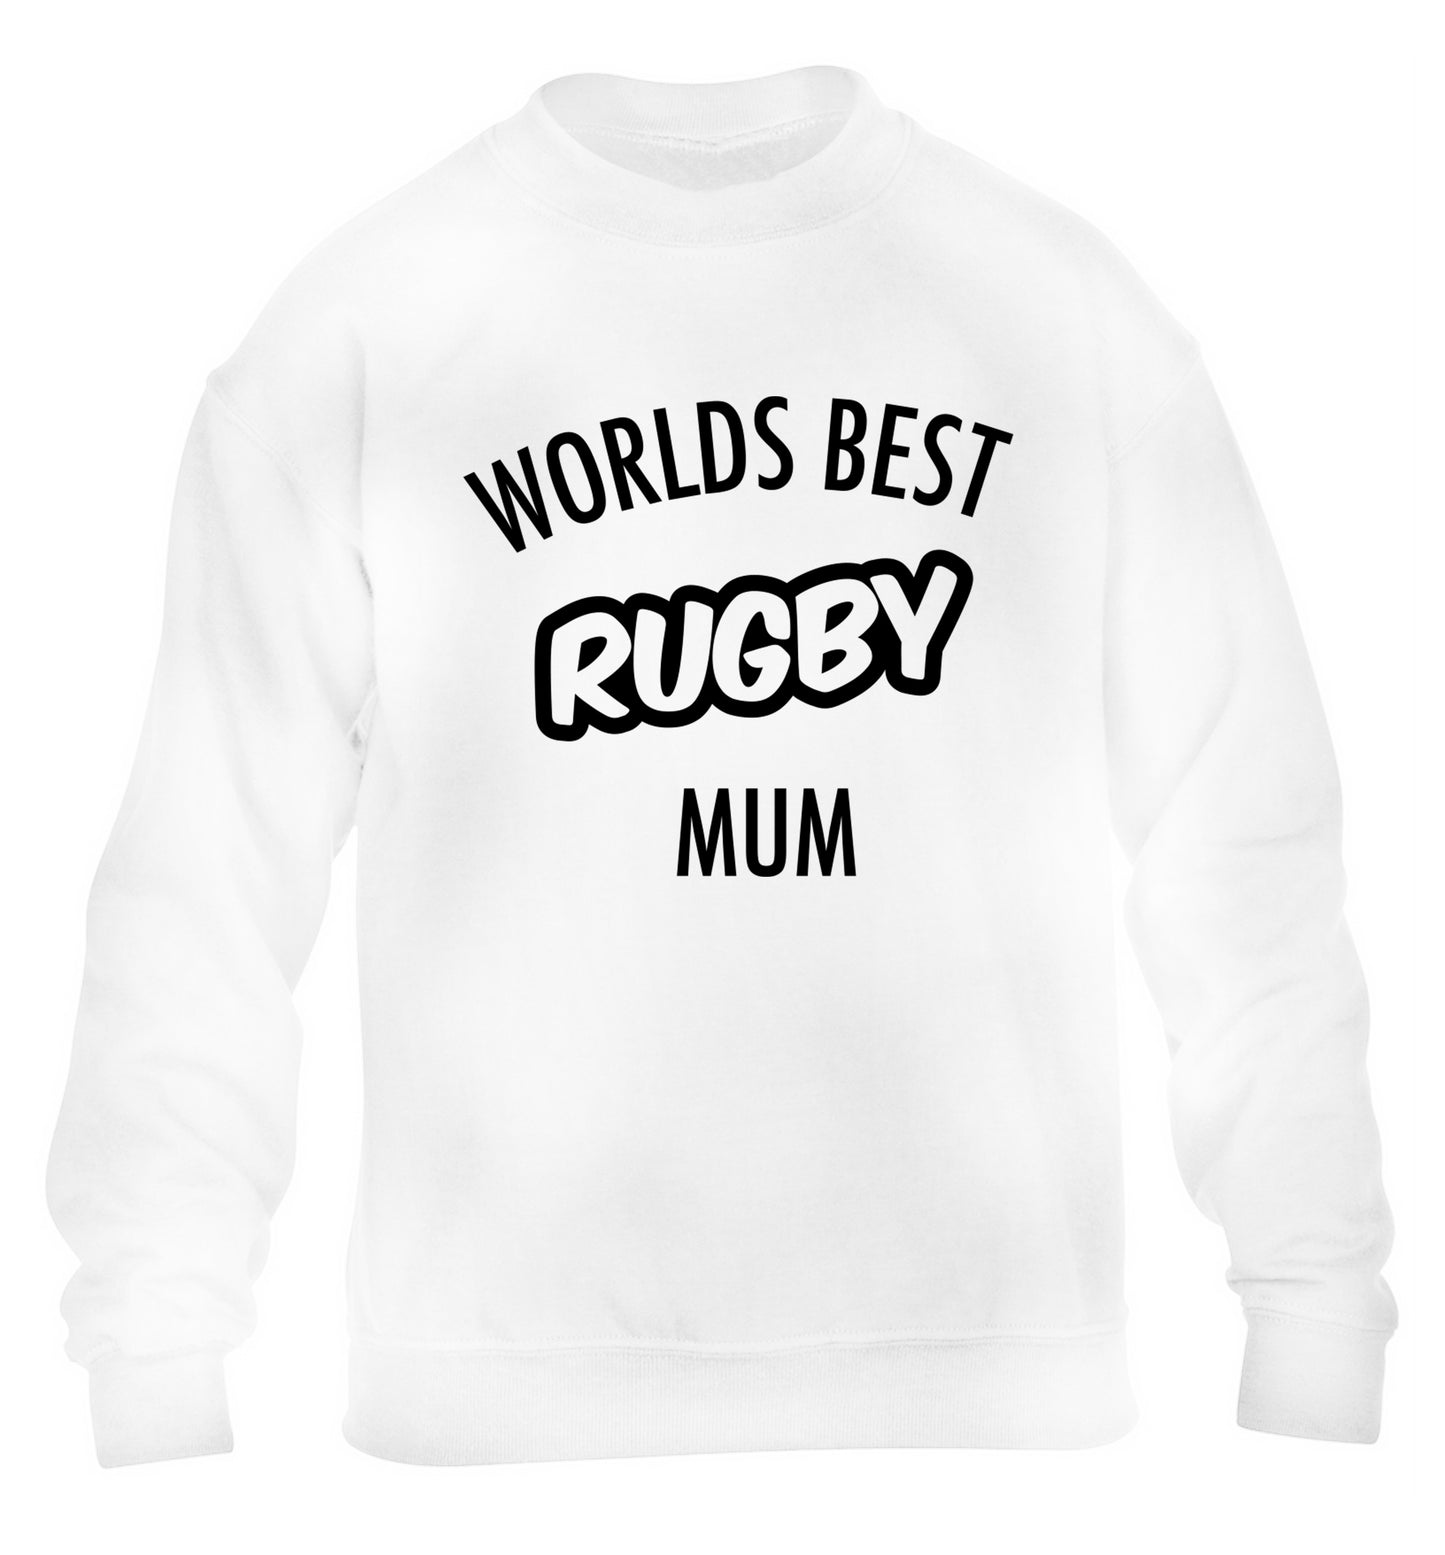 Worlds best rugby mum children's white sweater 12-13 Years